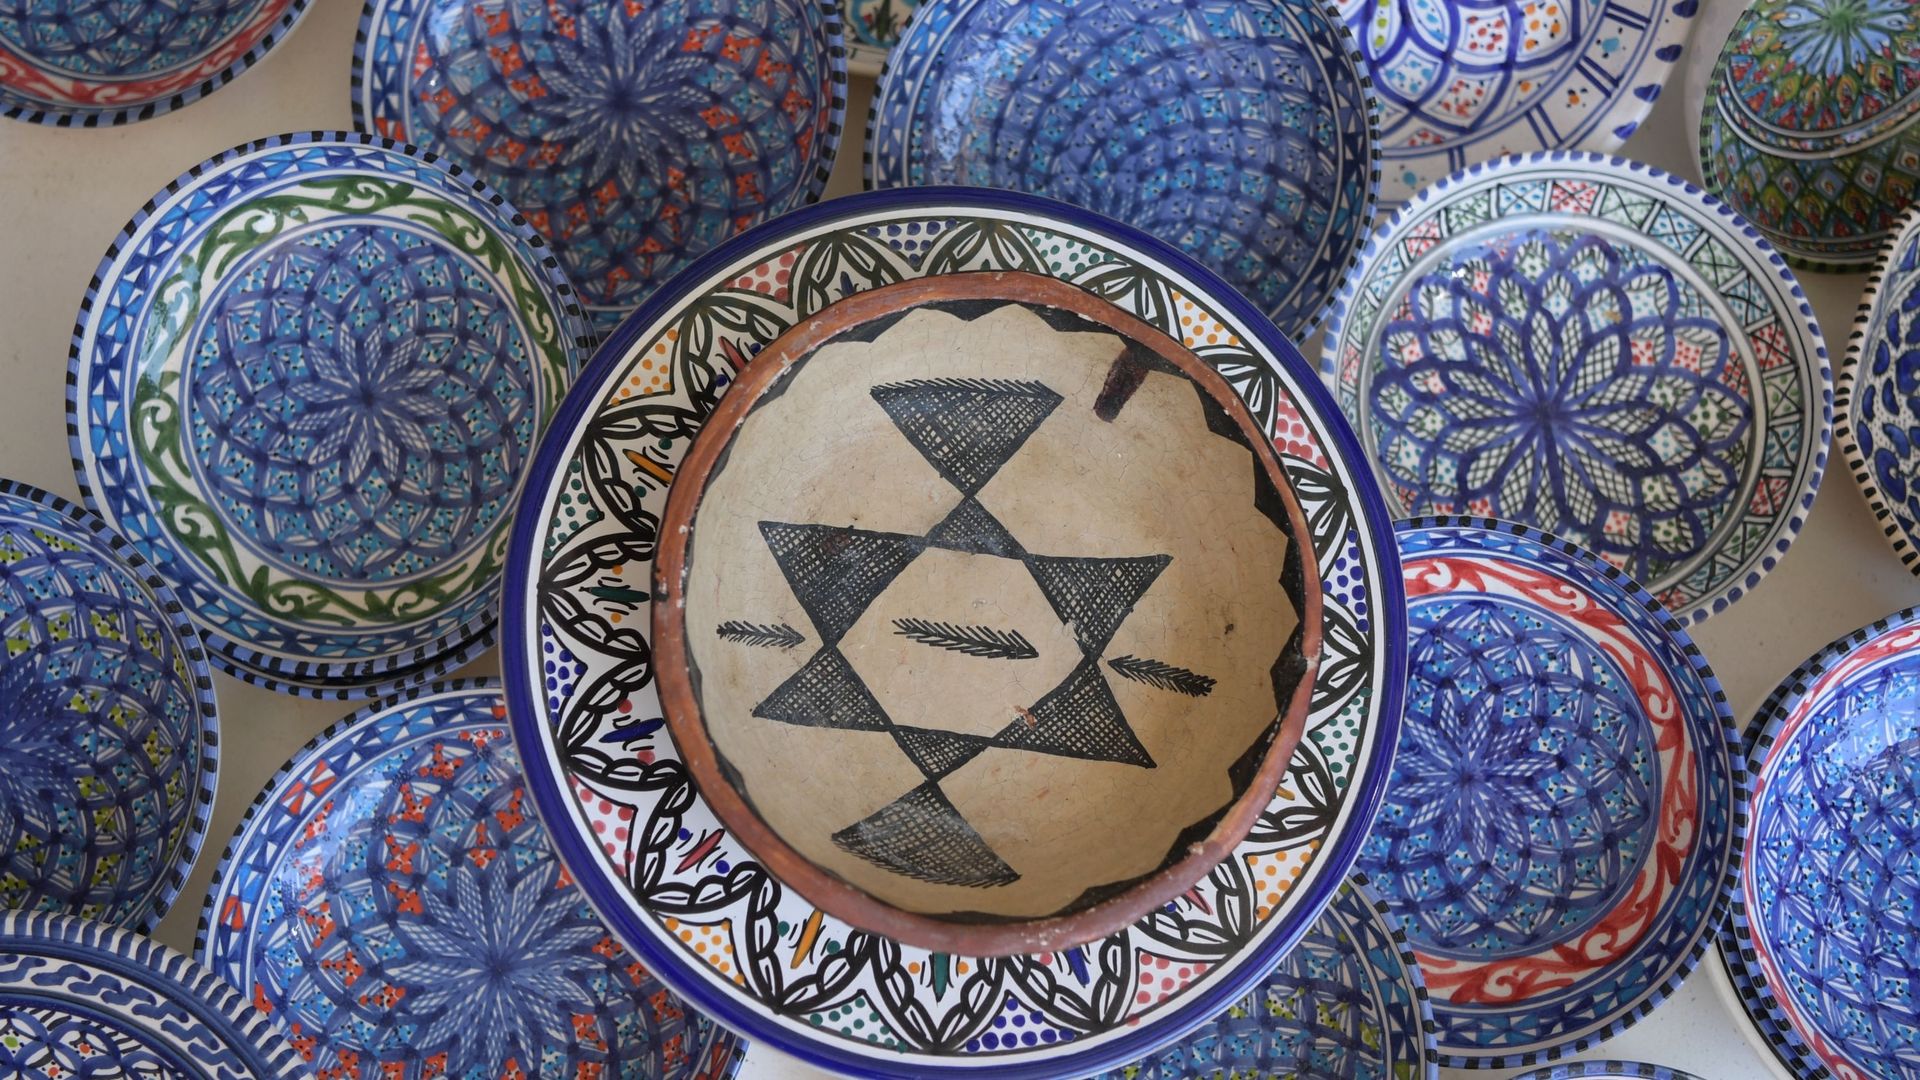 ‎Des poteries fabriquées à Sejnane sont exposées dans une boutique de souvenirs de la capitale tunisienne Tunis le 10 mai 2019. Les compétences en poterie des femmes de Sejnane ont été reconnues en 2018 par l’UNESCO comme patrimoine culturel immatériel de